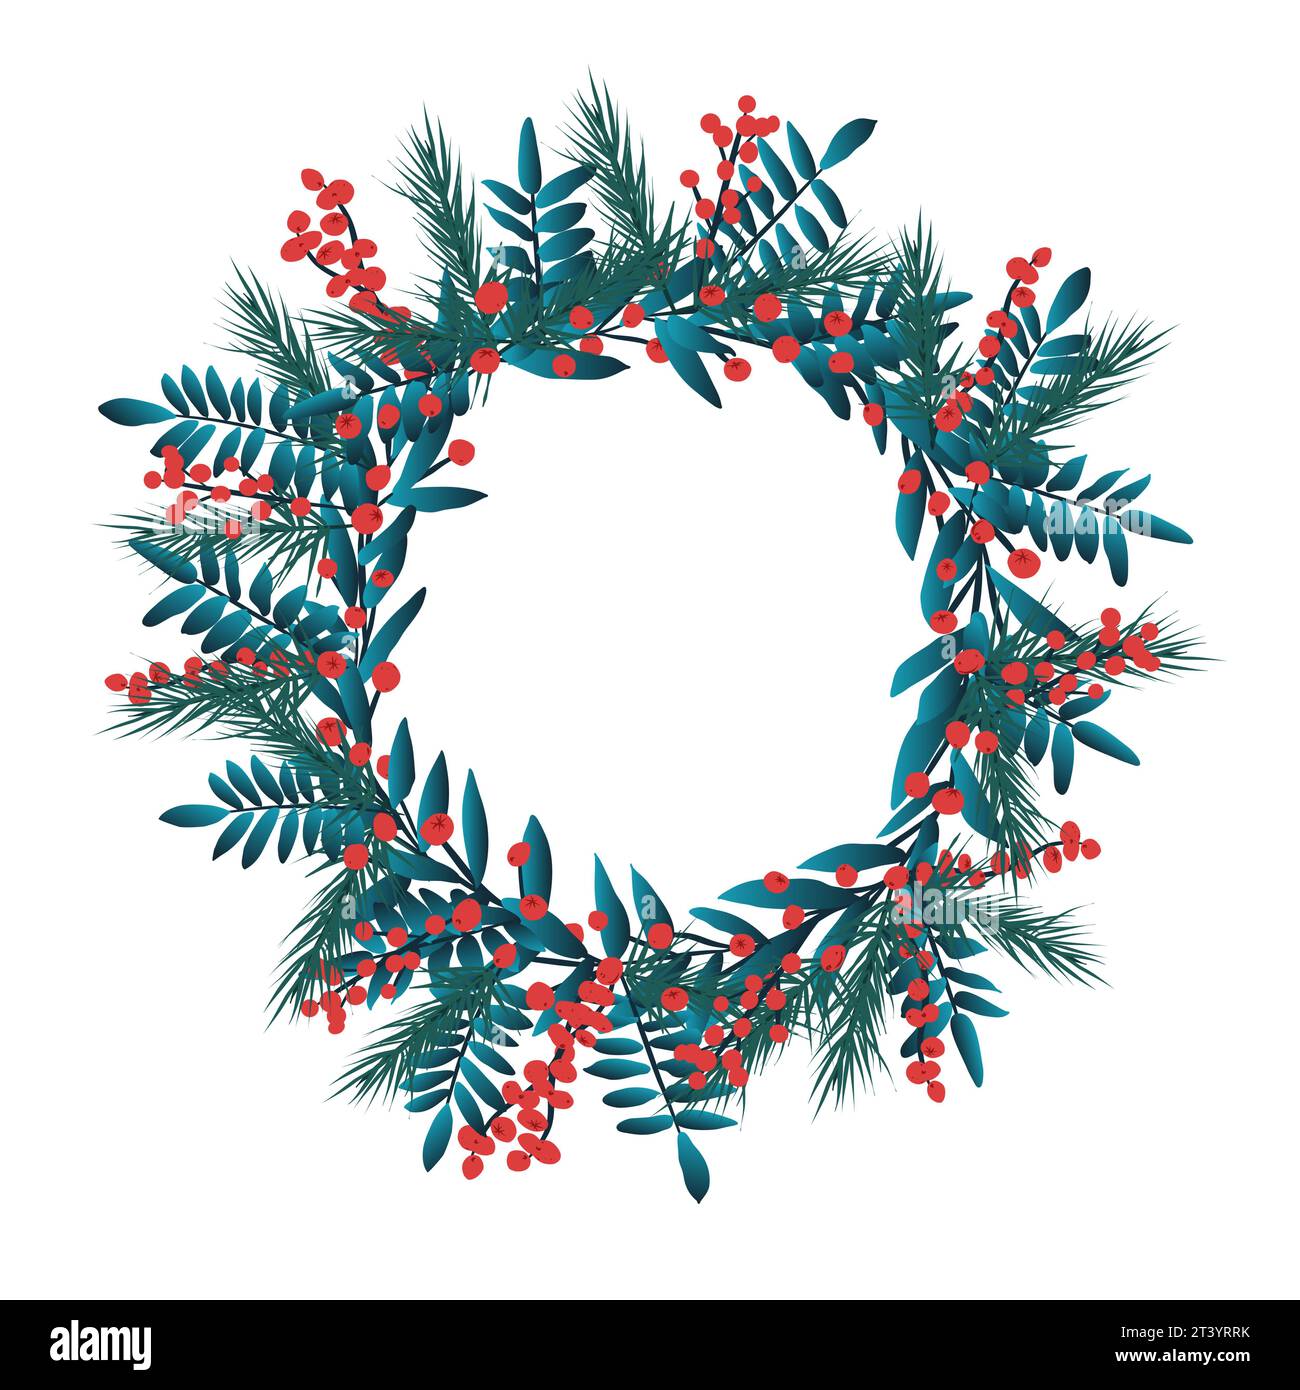 Illustration de couronne avec la nature de Noël, espace pour le texte avec fond blanc. Branches et feuilles vertes et fruits rouges Banque D'Images